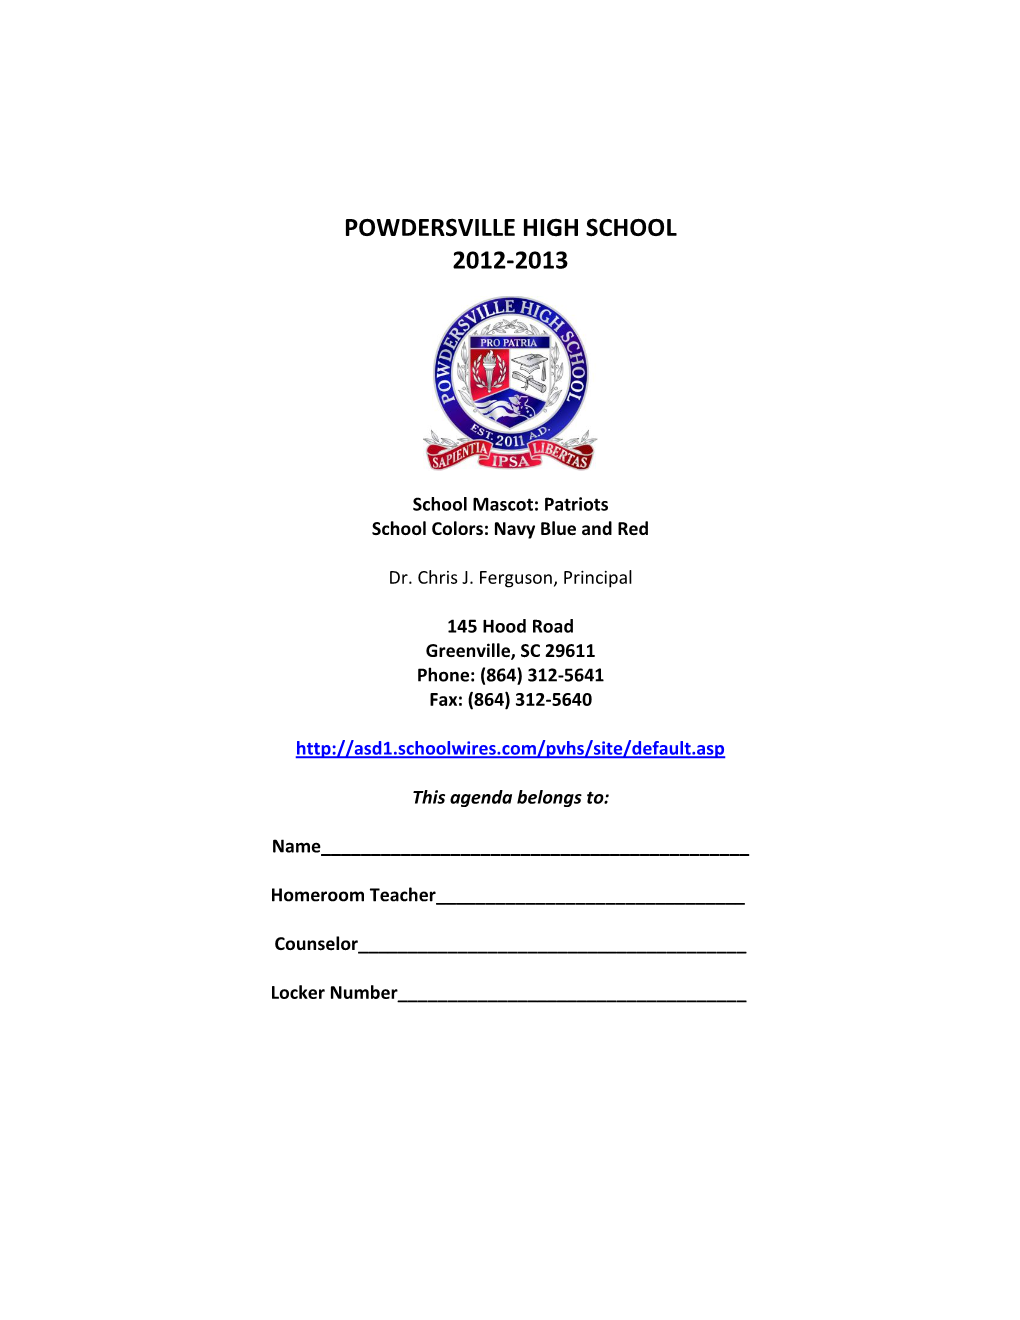 Powdersville High School 2012-2013